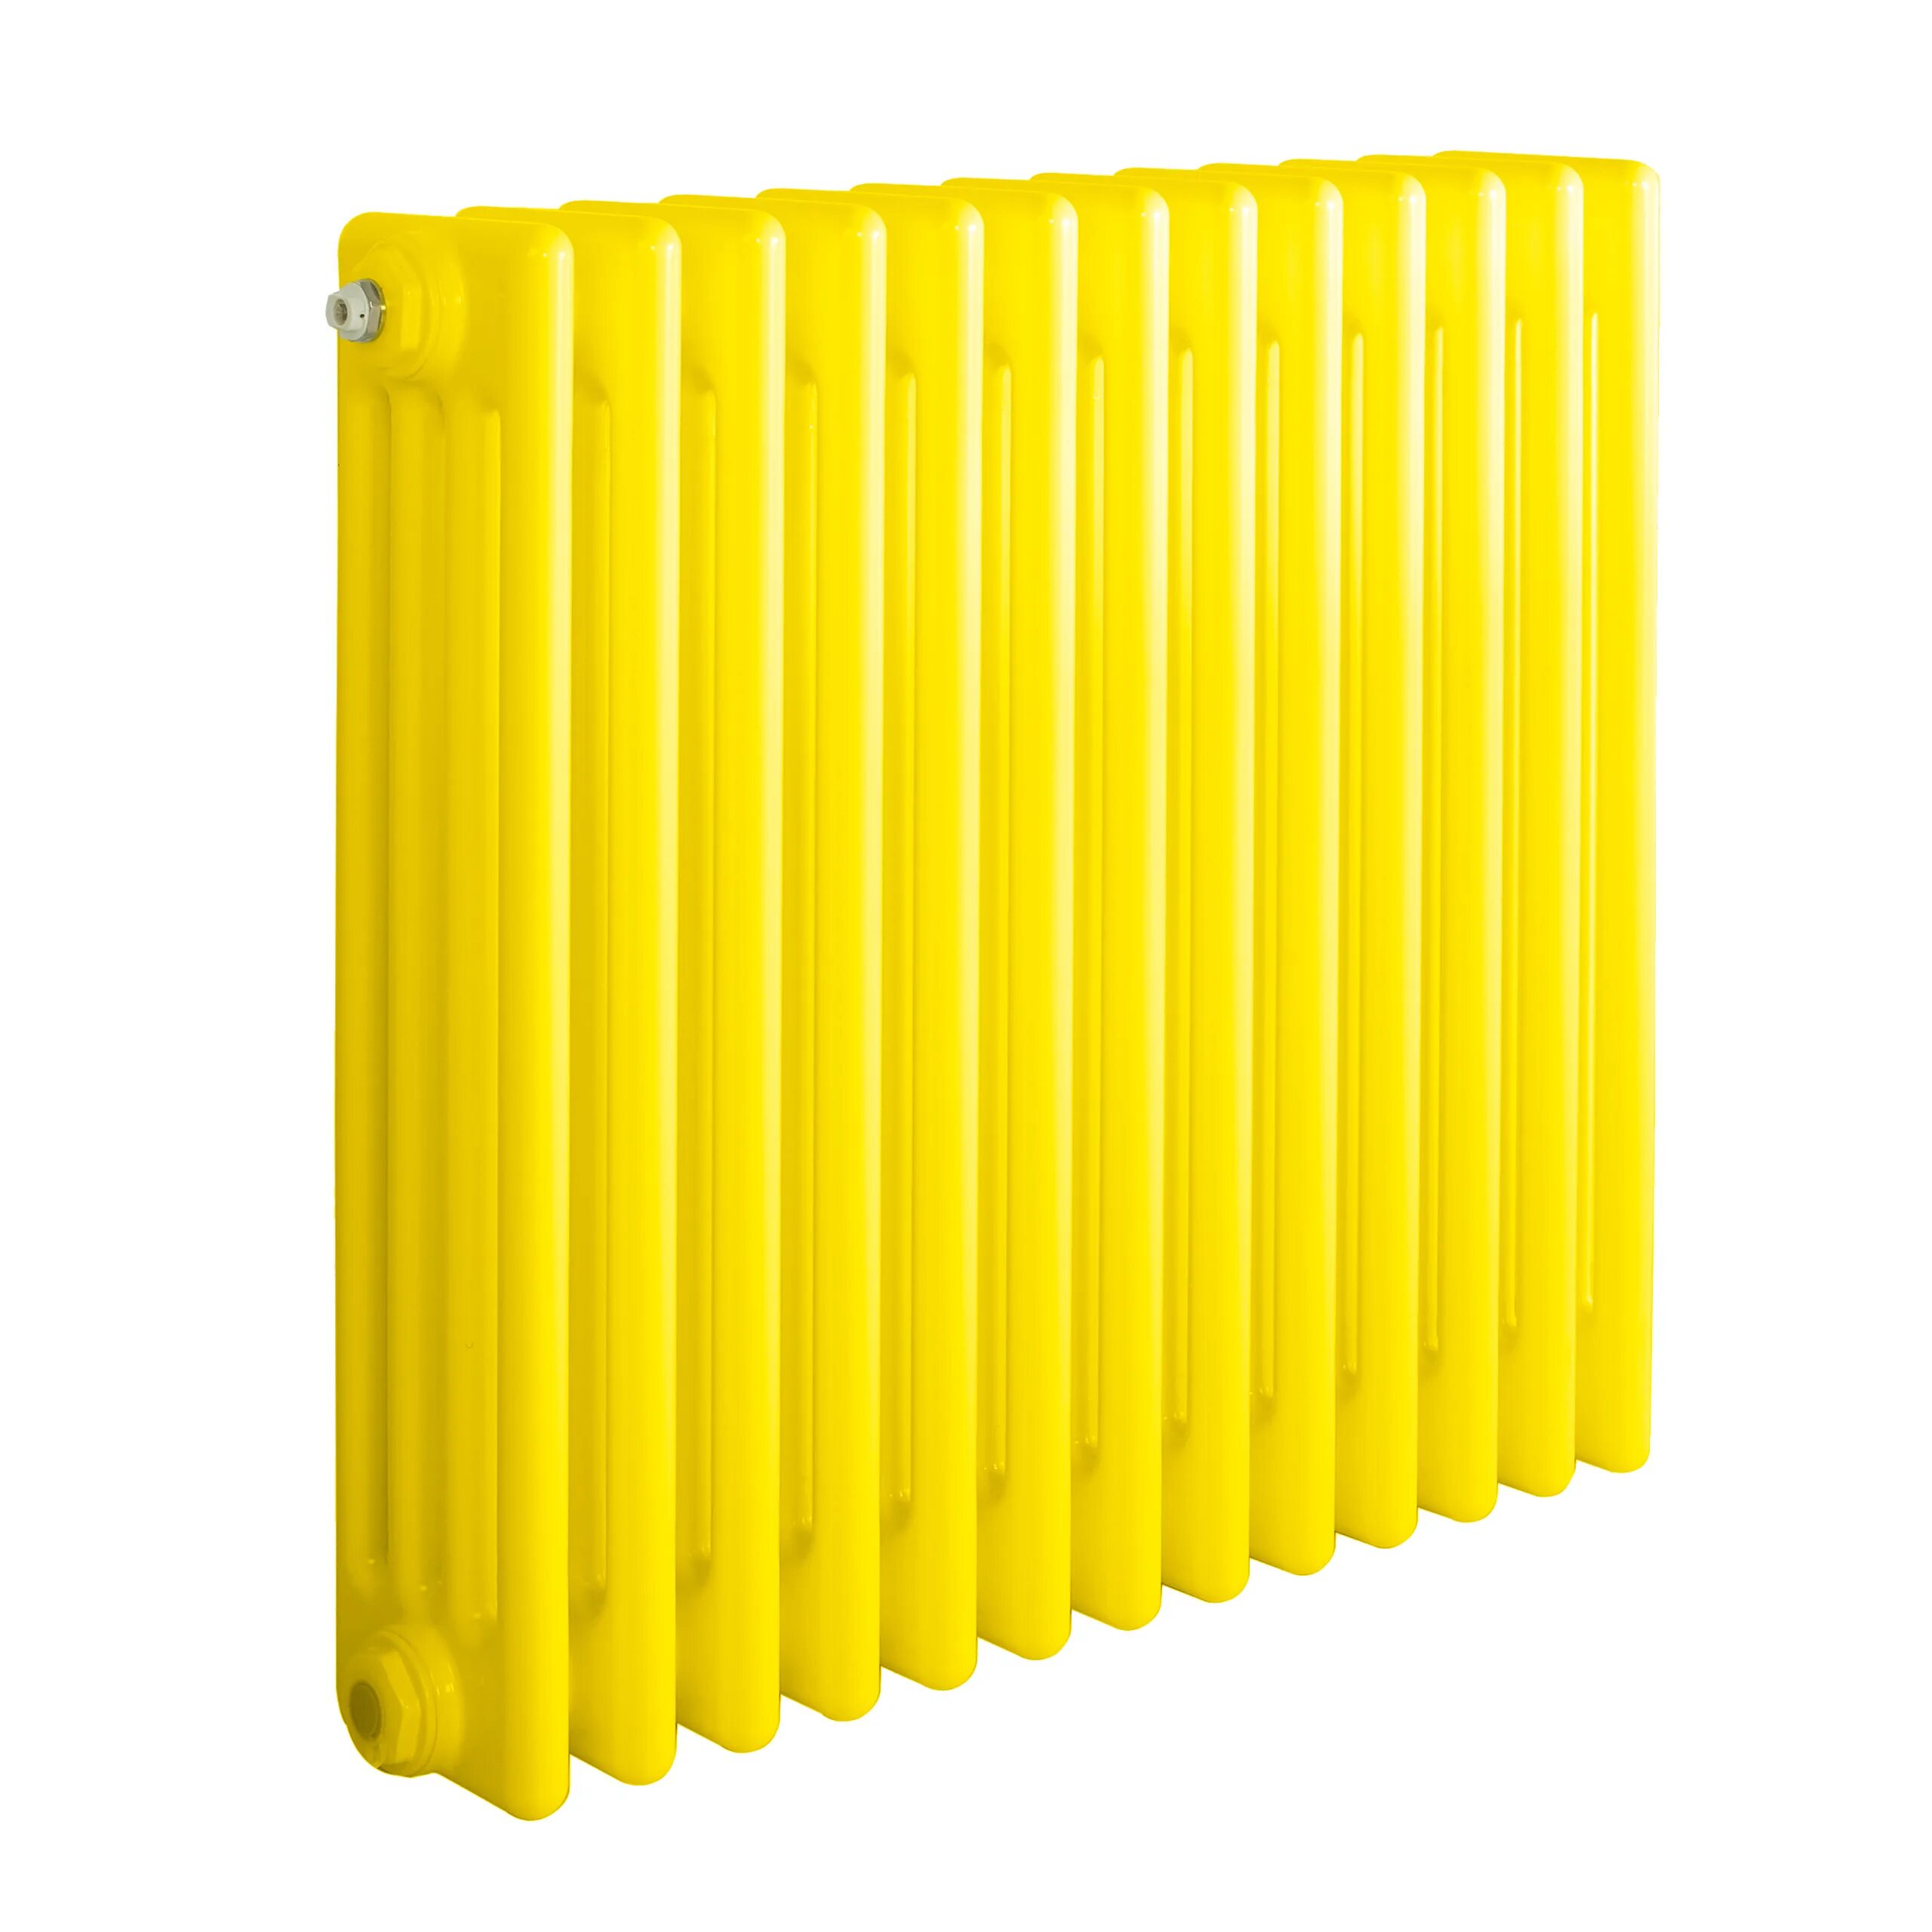 Радиаторы отопления сера. Радиатор Арбония вертикальный желтый. Желтая батарея. Радиатор отопления желтого цвета. Радиаторы трубчатые отопления цветные.